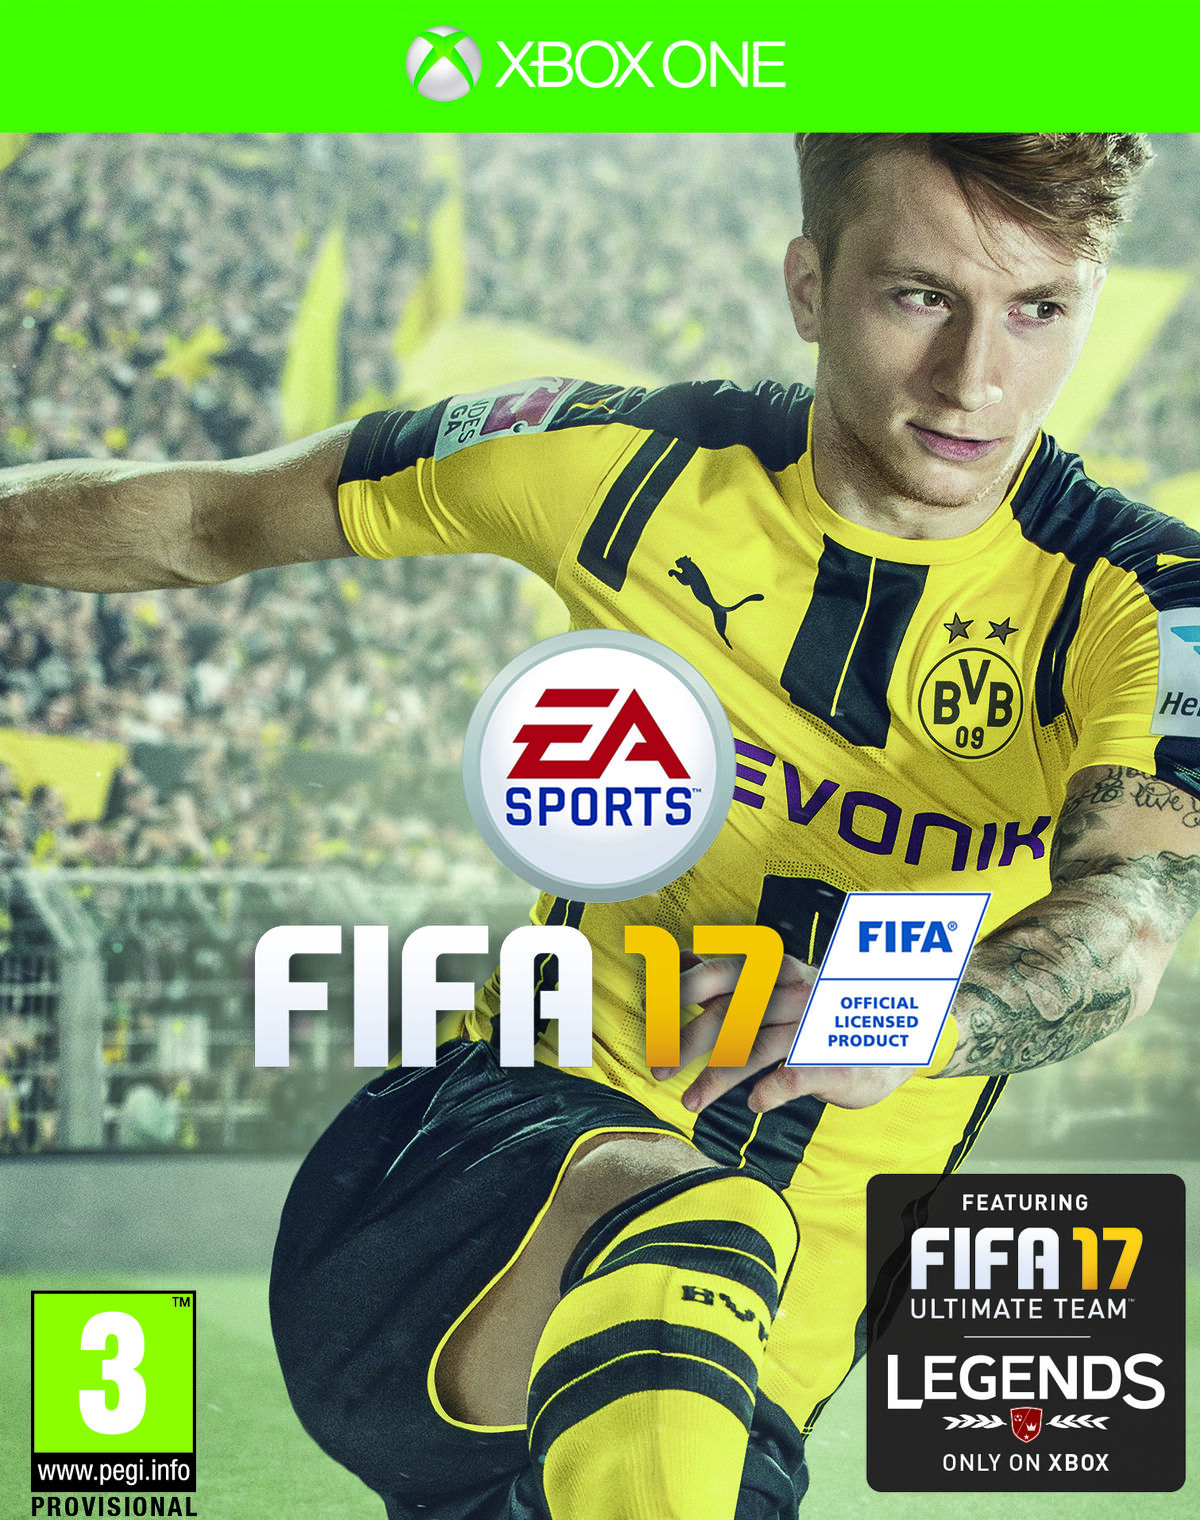 FIFA 17, FIFA Football Gaming wiki